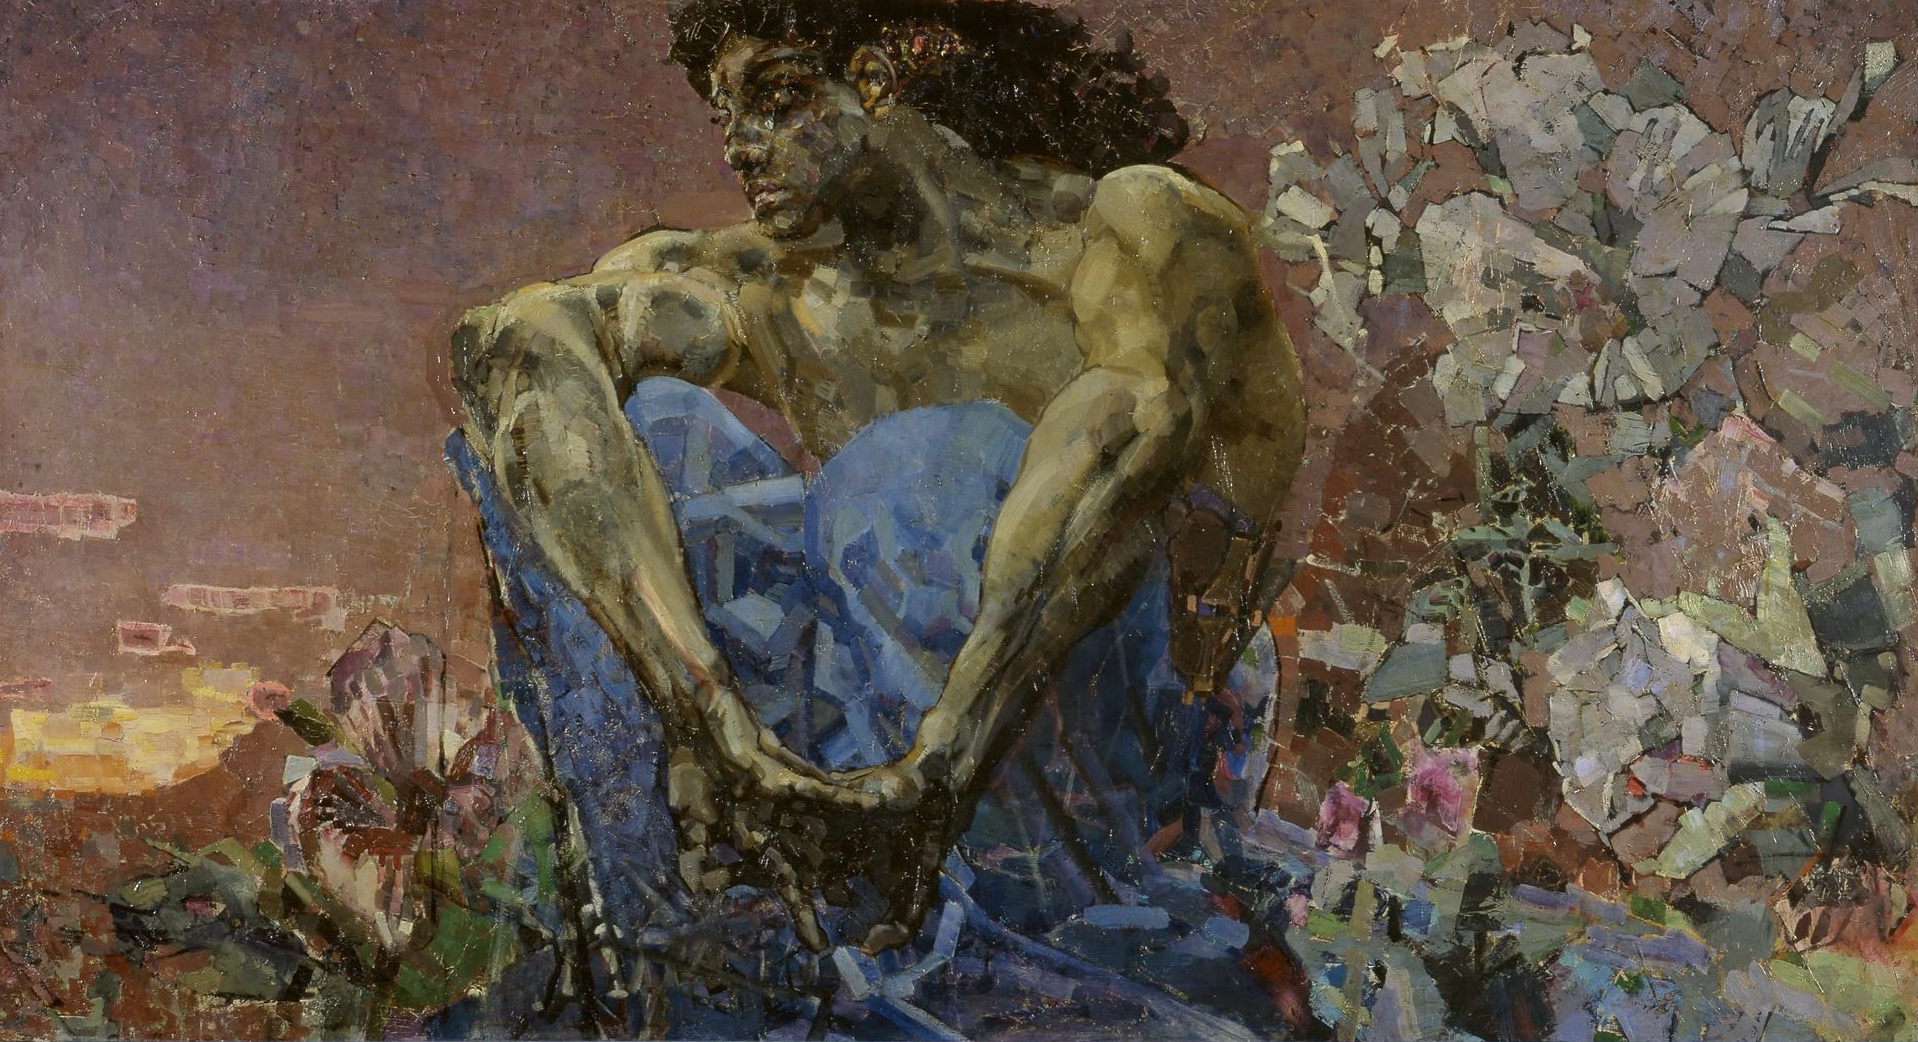 Demon așezat în grădină by Mikhail Vrubel - 1890 - 114 x 211 cm 